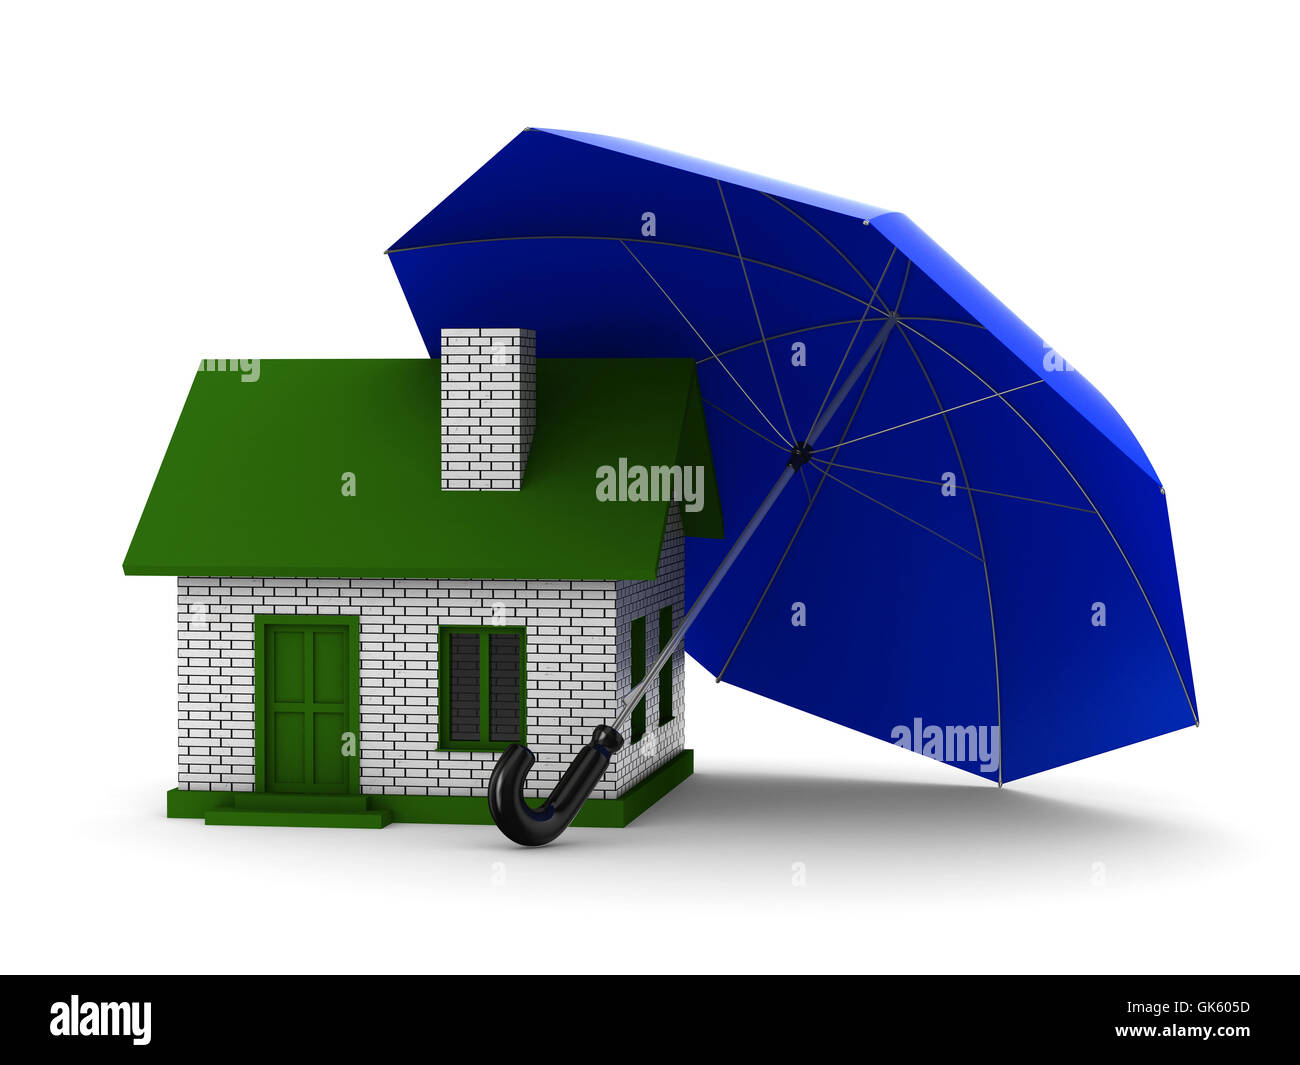 Insurance of habitation. Isolated 3D image on white background Stock Photo